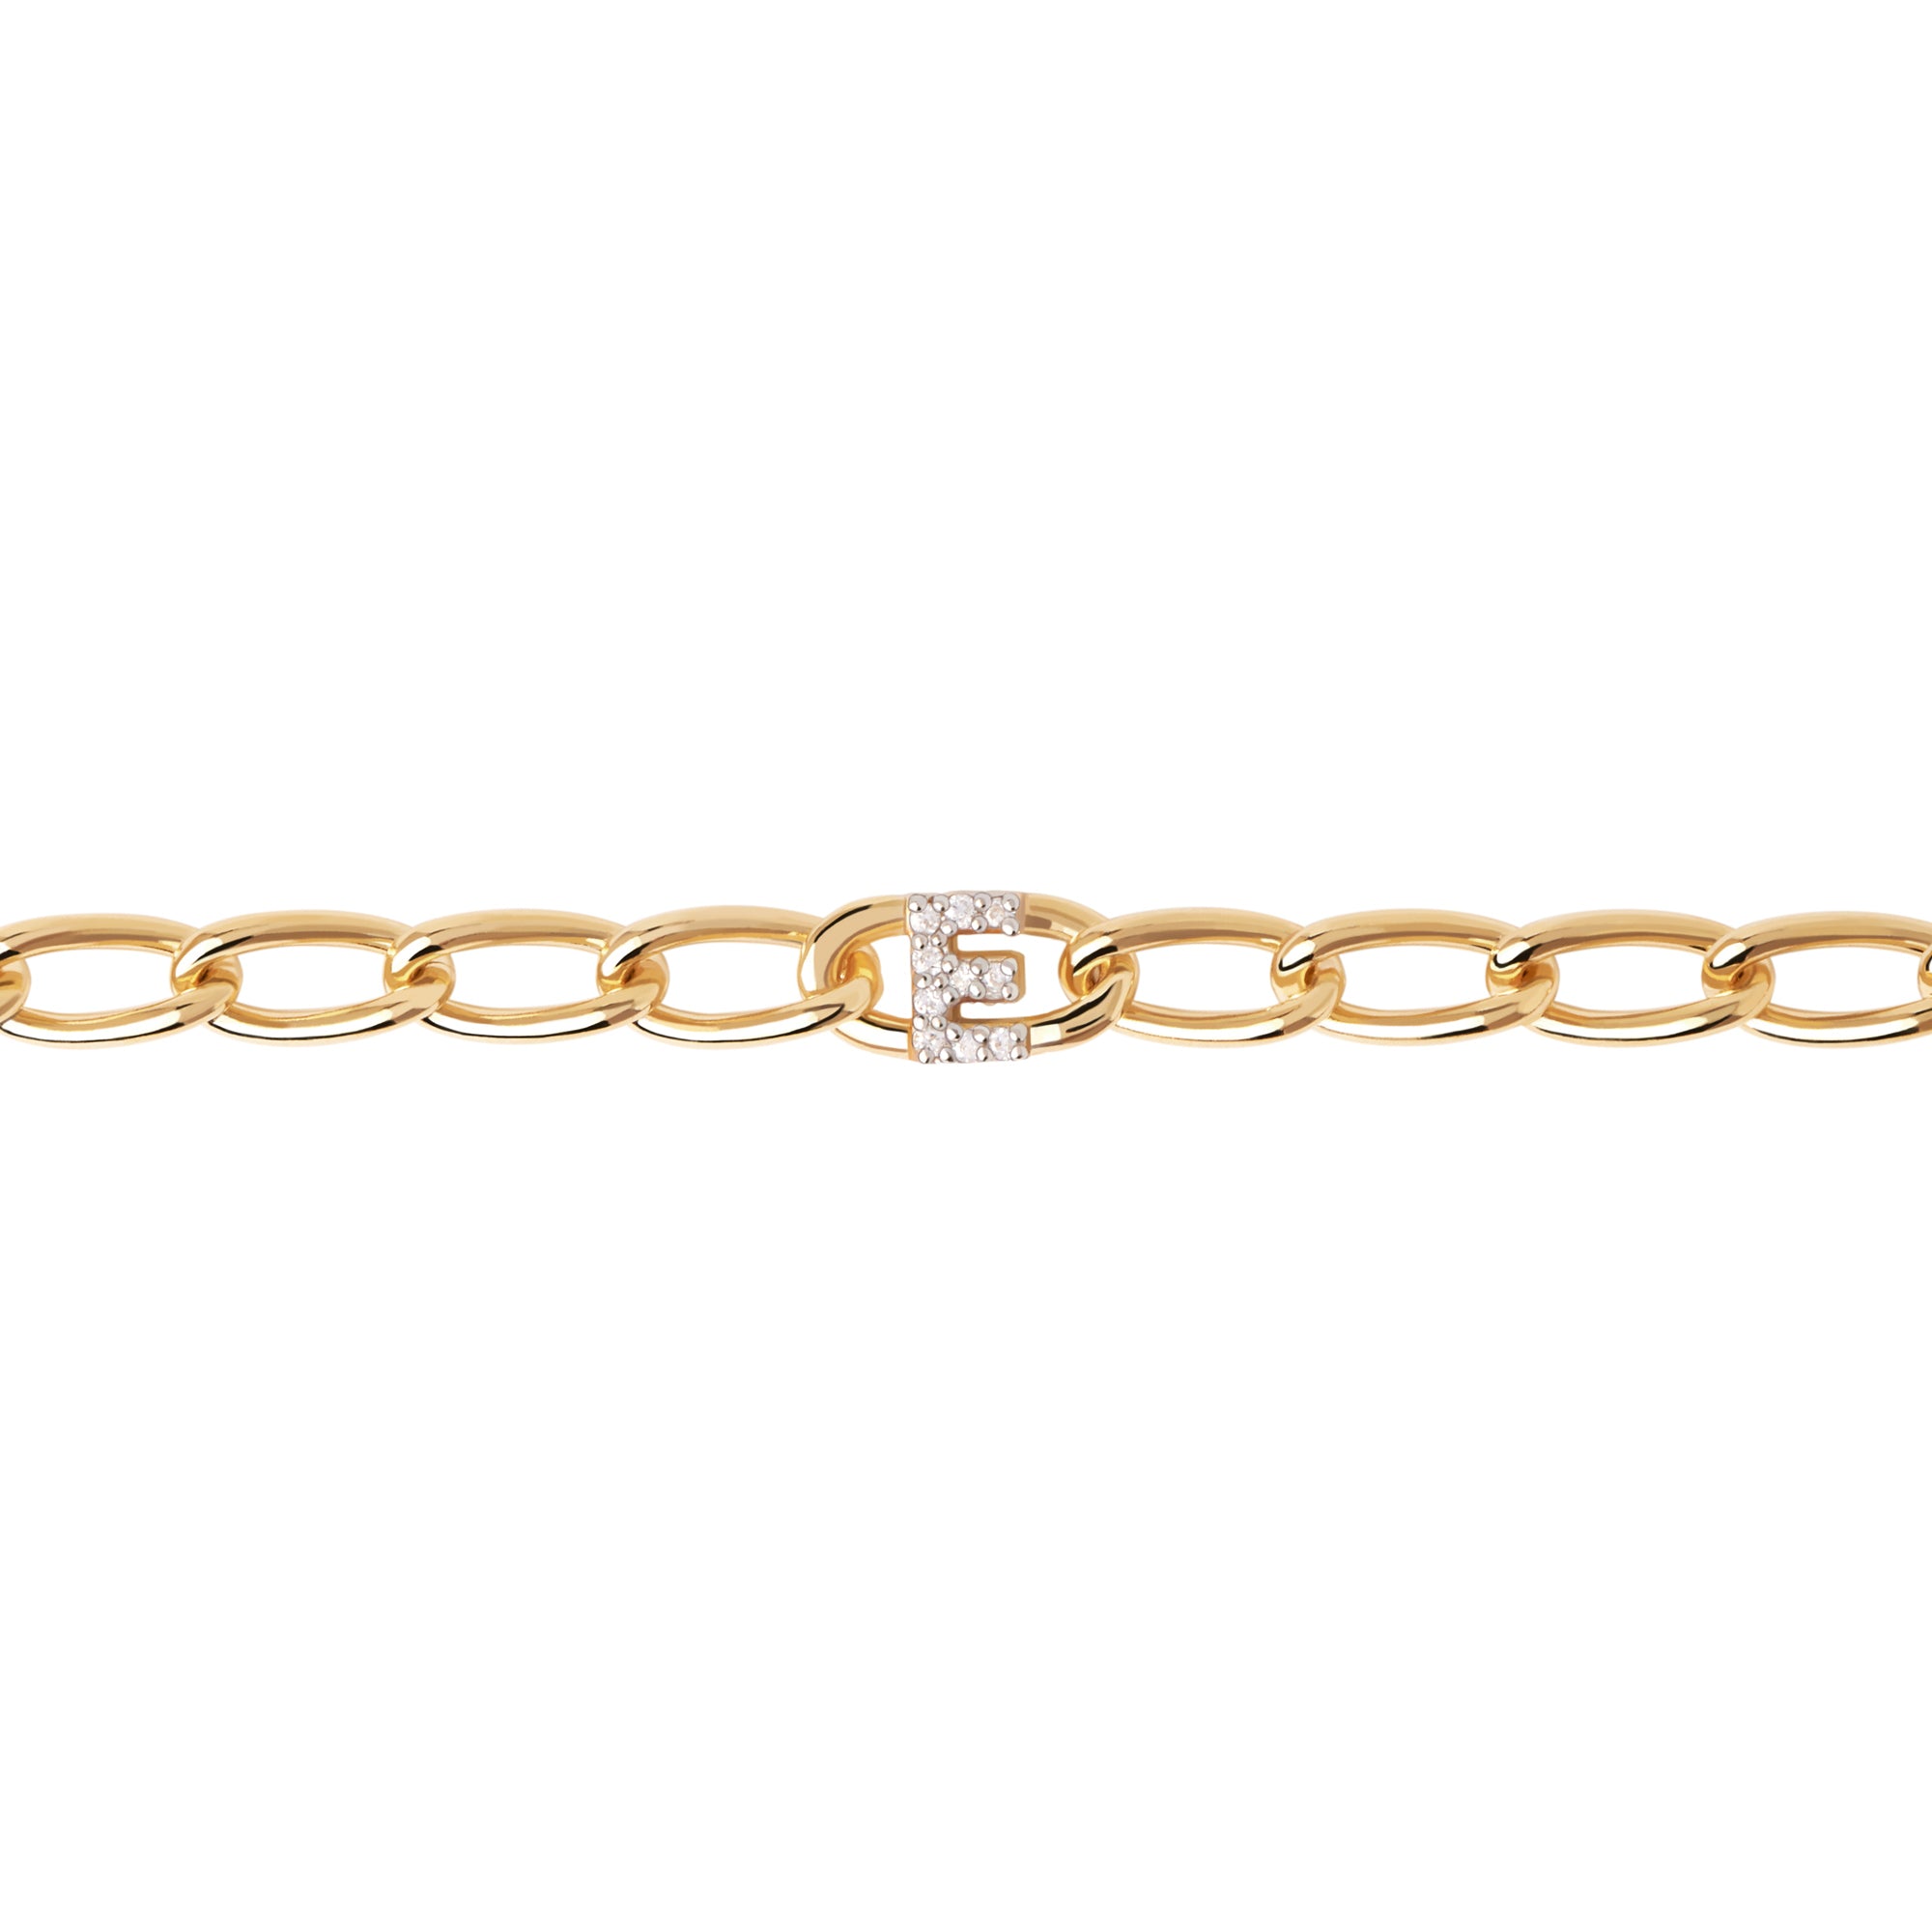 Letter E Chain Gold Bracelet